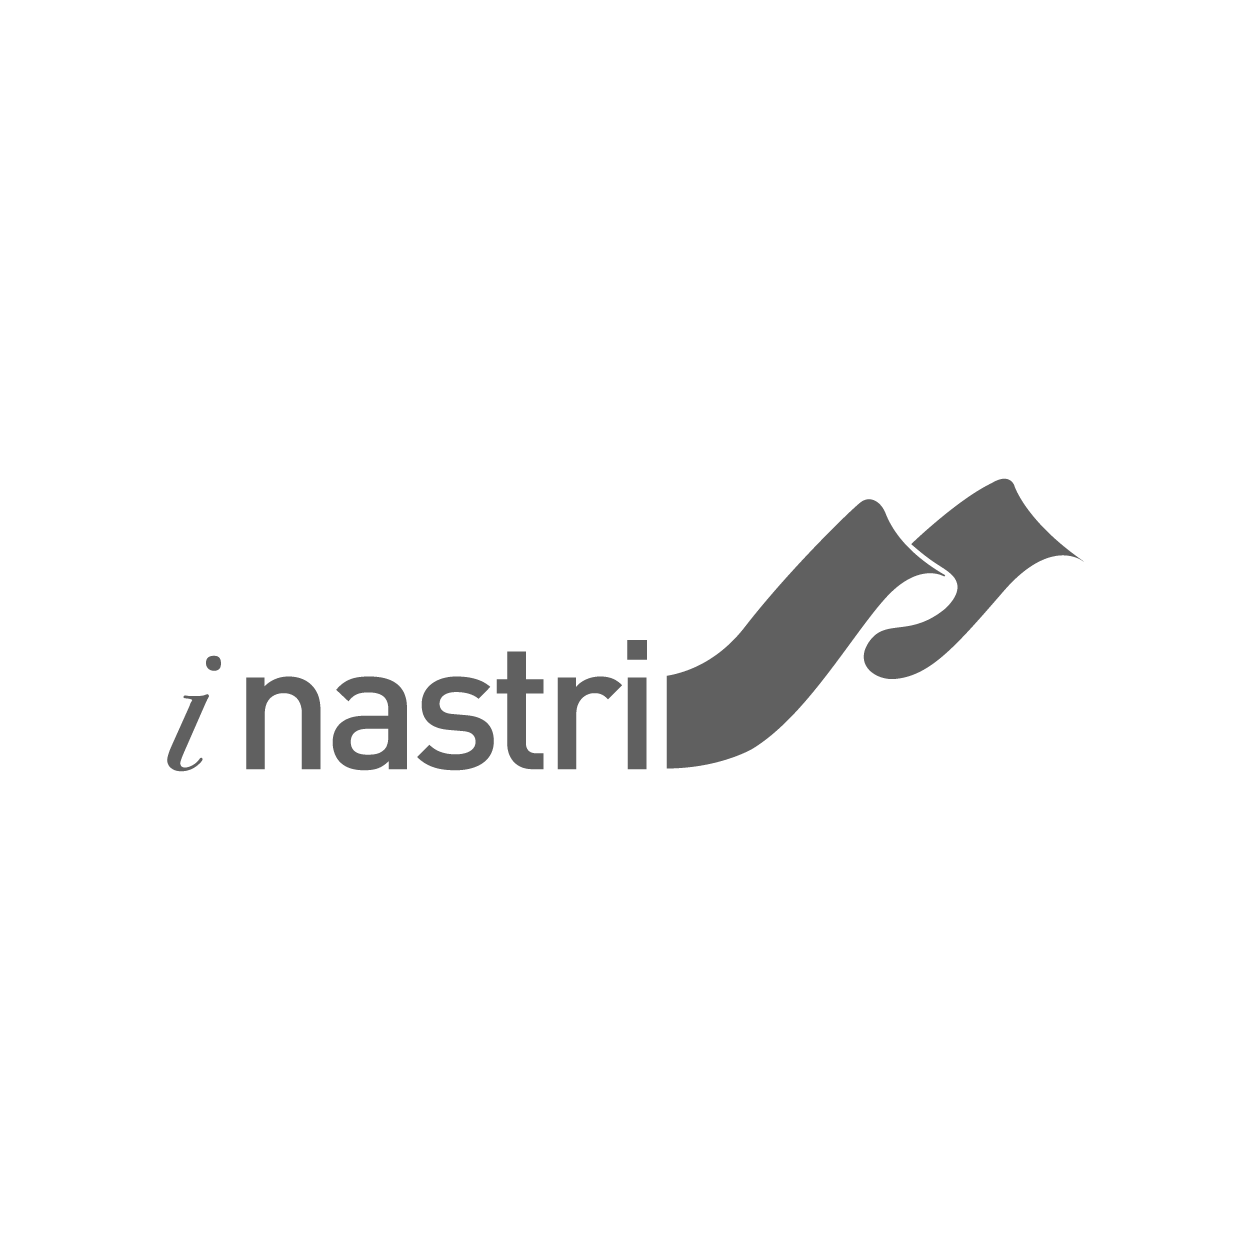 Advertising I Nastri | Ad.One Agenzia di comunicazione